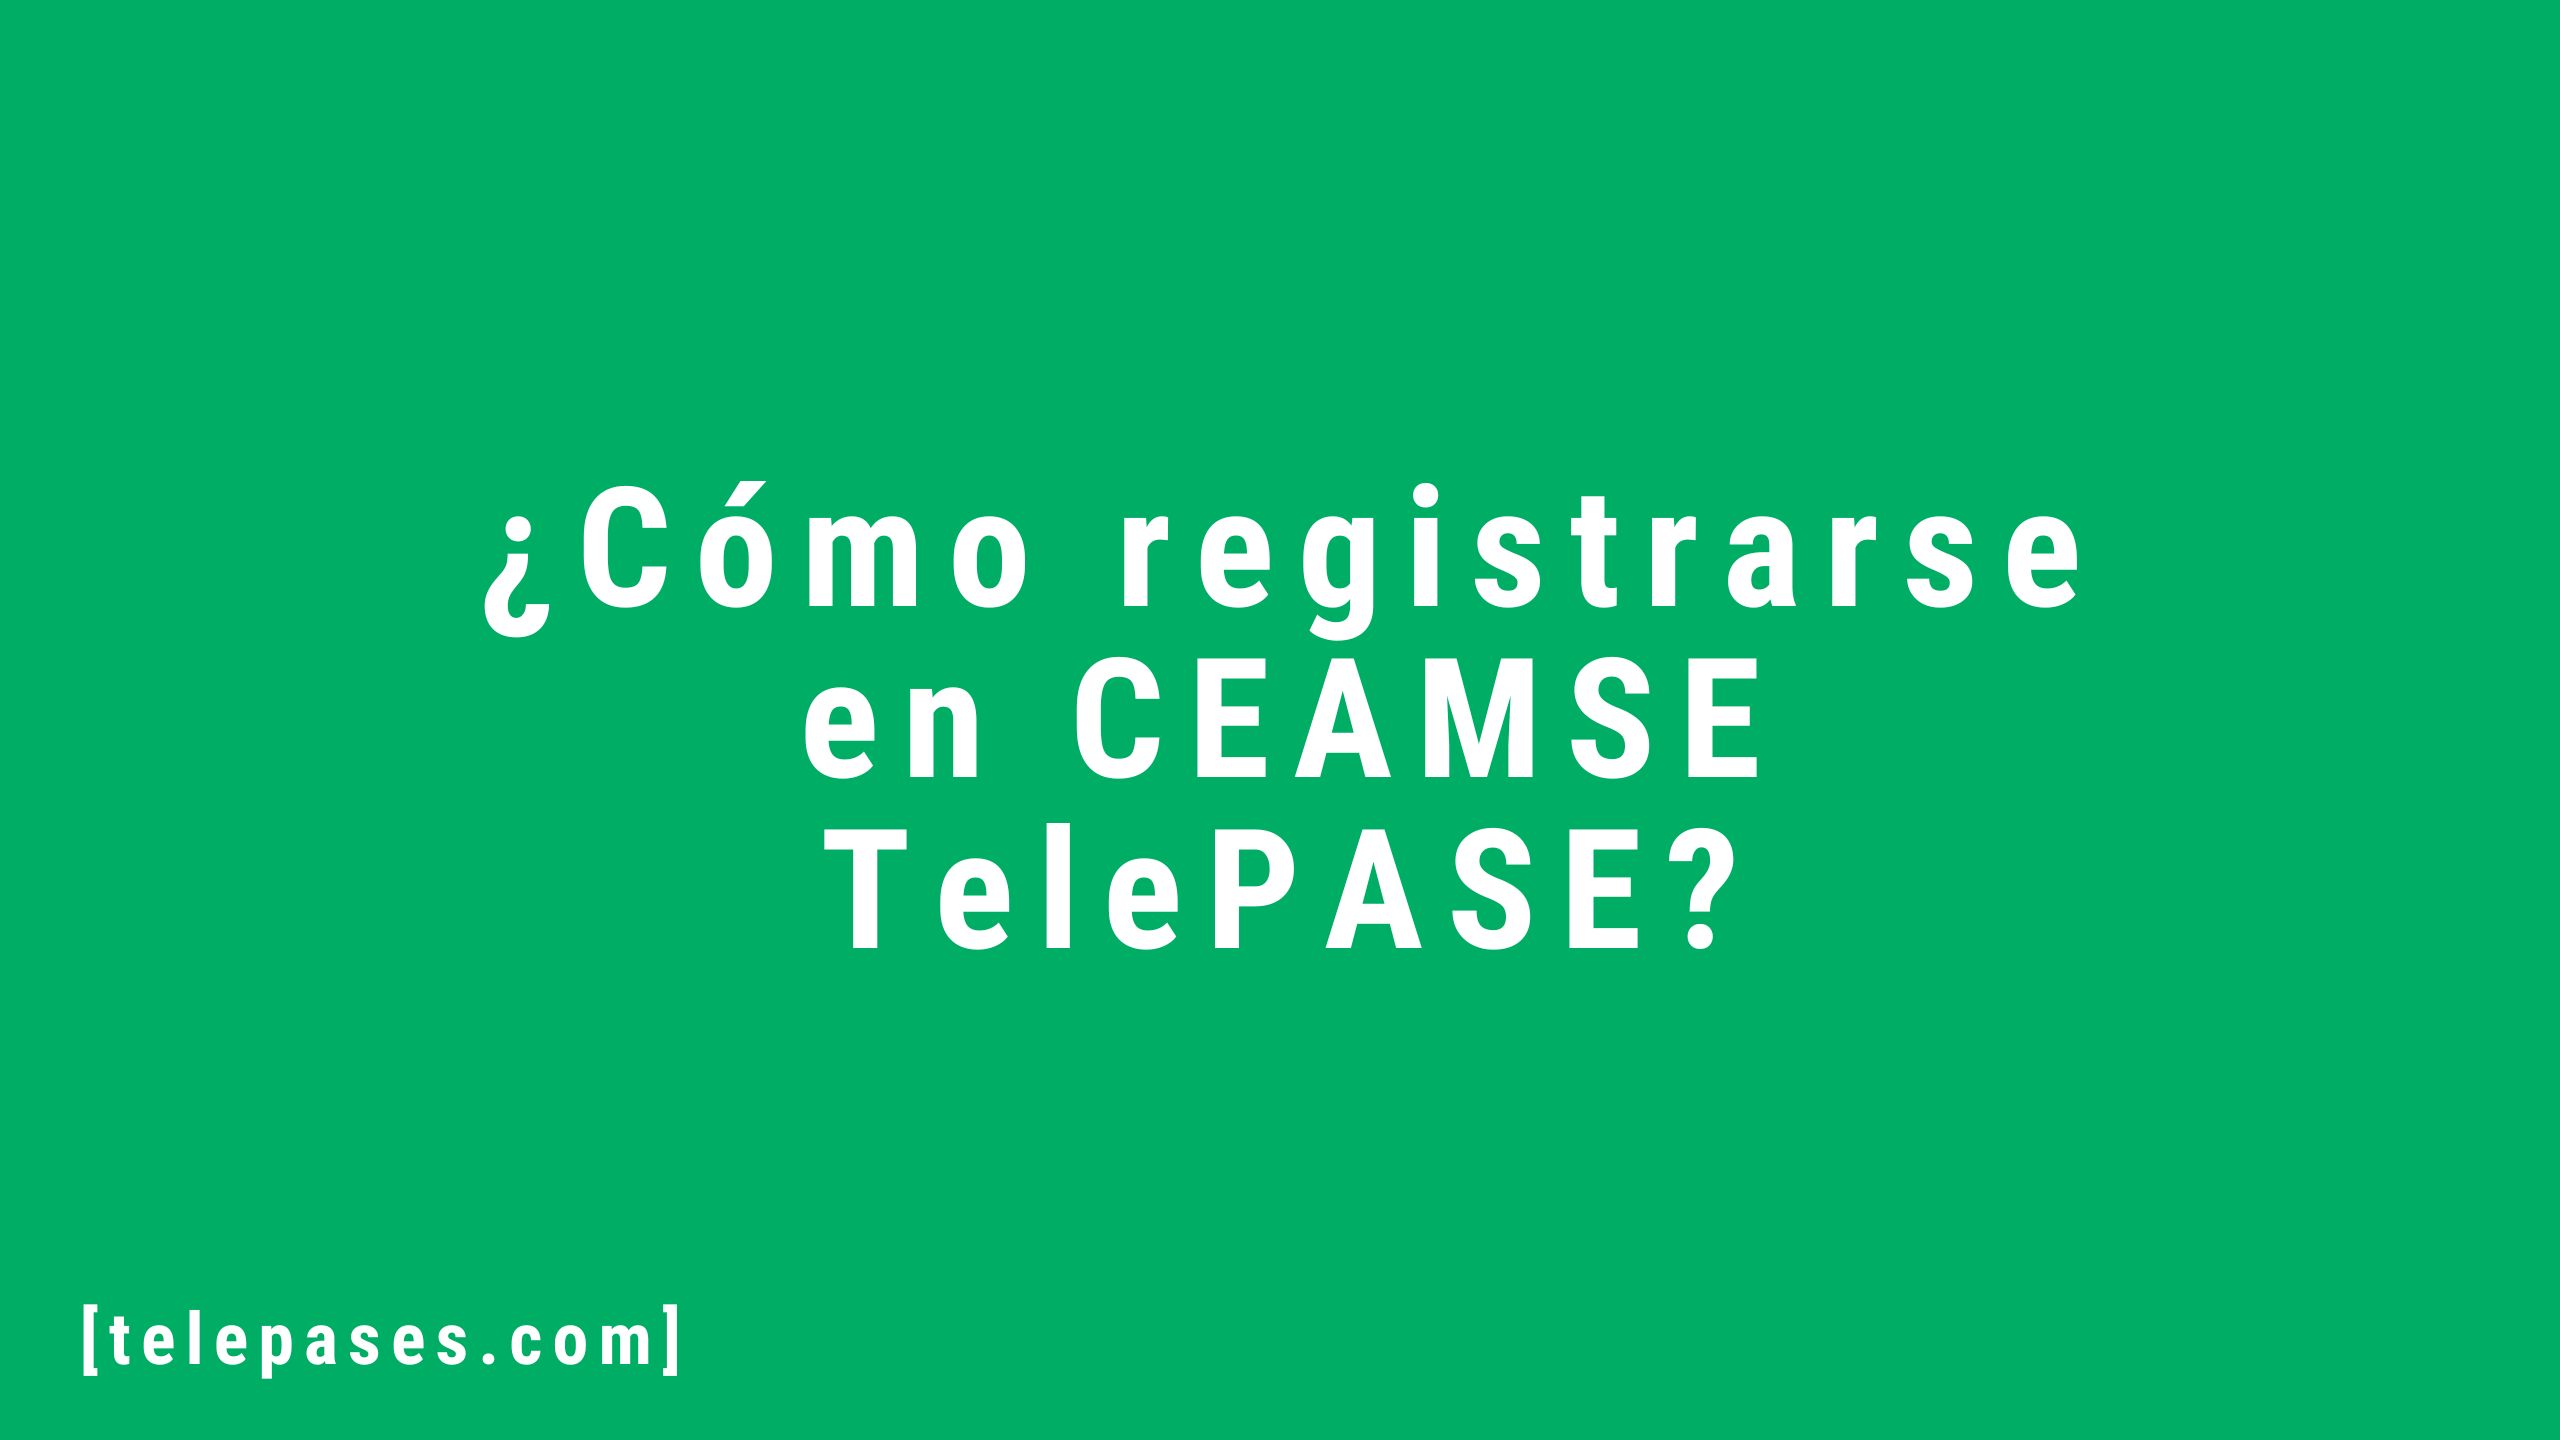 Cómo registrarse en CEAMSE TelePASE